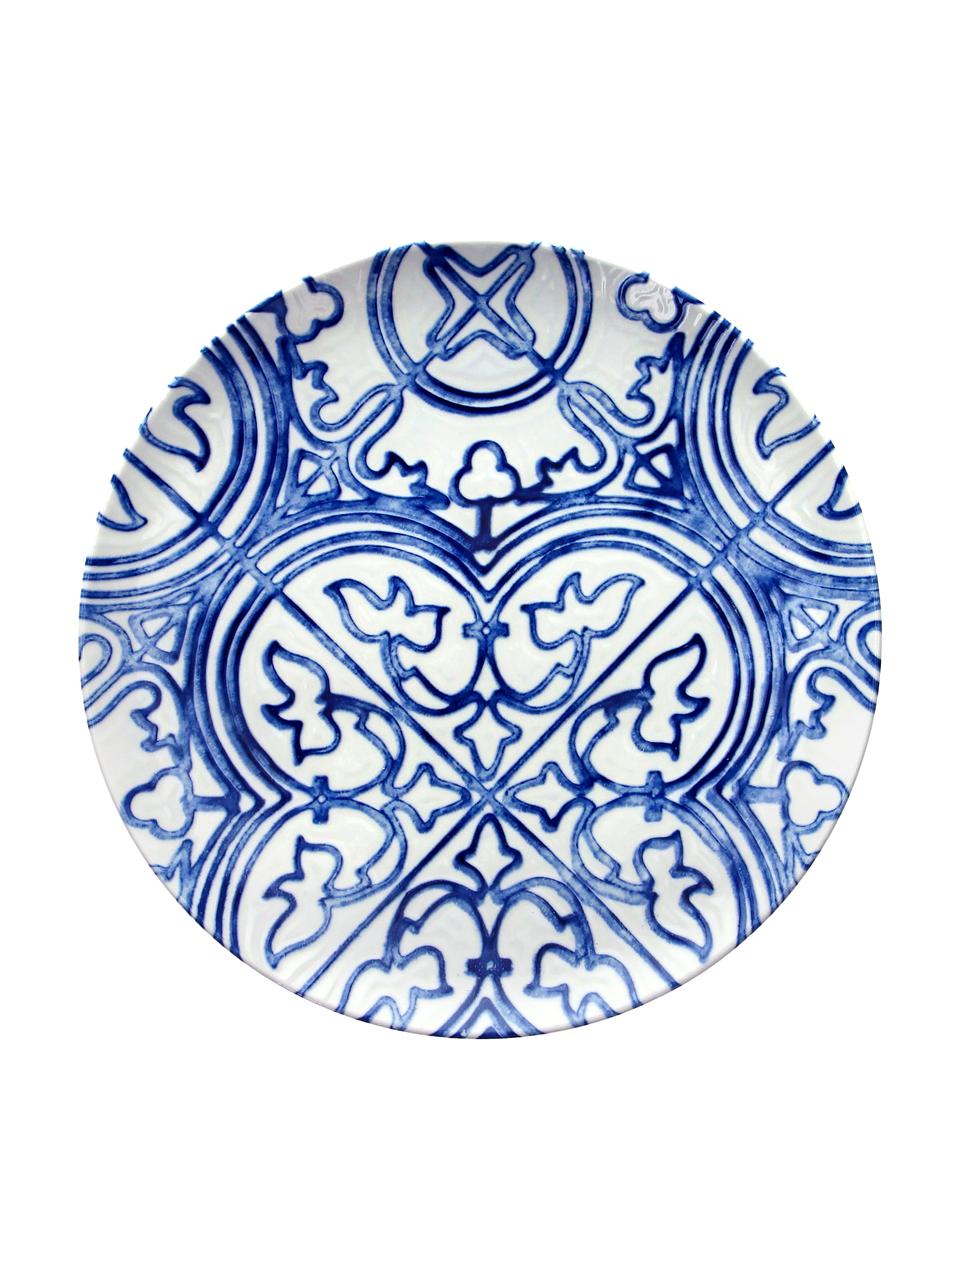 Speiseteller Maiolica aus Porzellan in Weiß/Blau, 2 Stück, Porzellan, Blau, Weiß, gemustert, Ø 26 cm